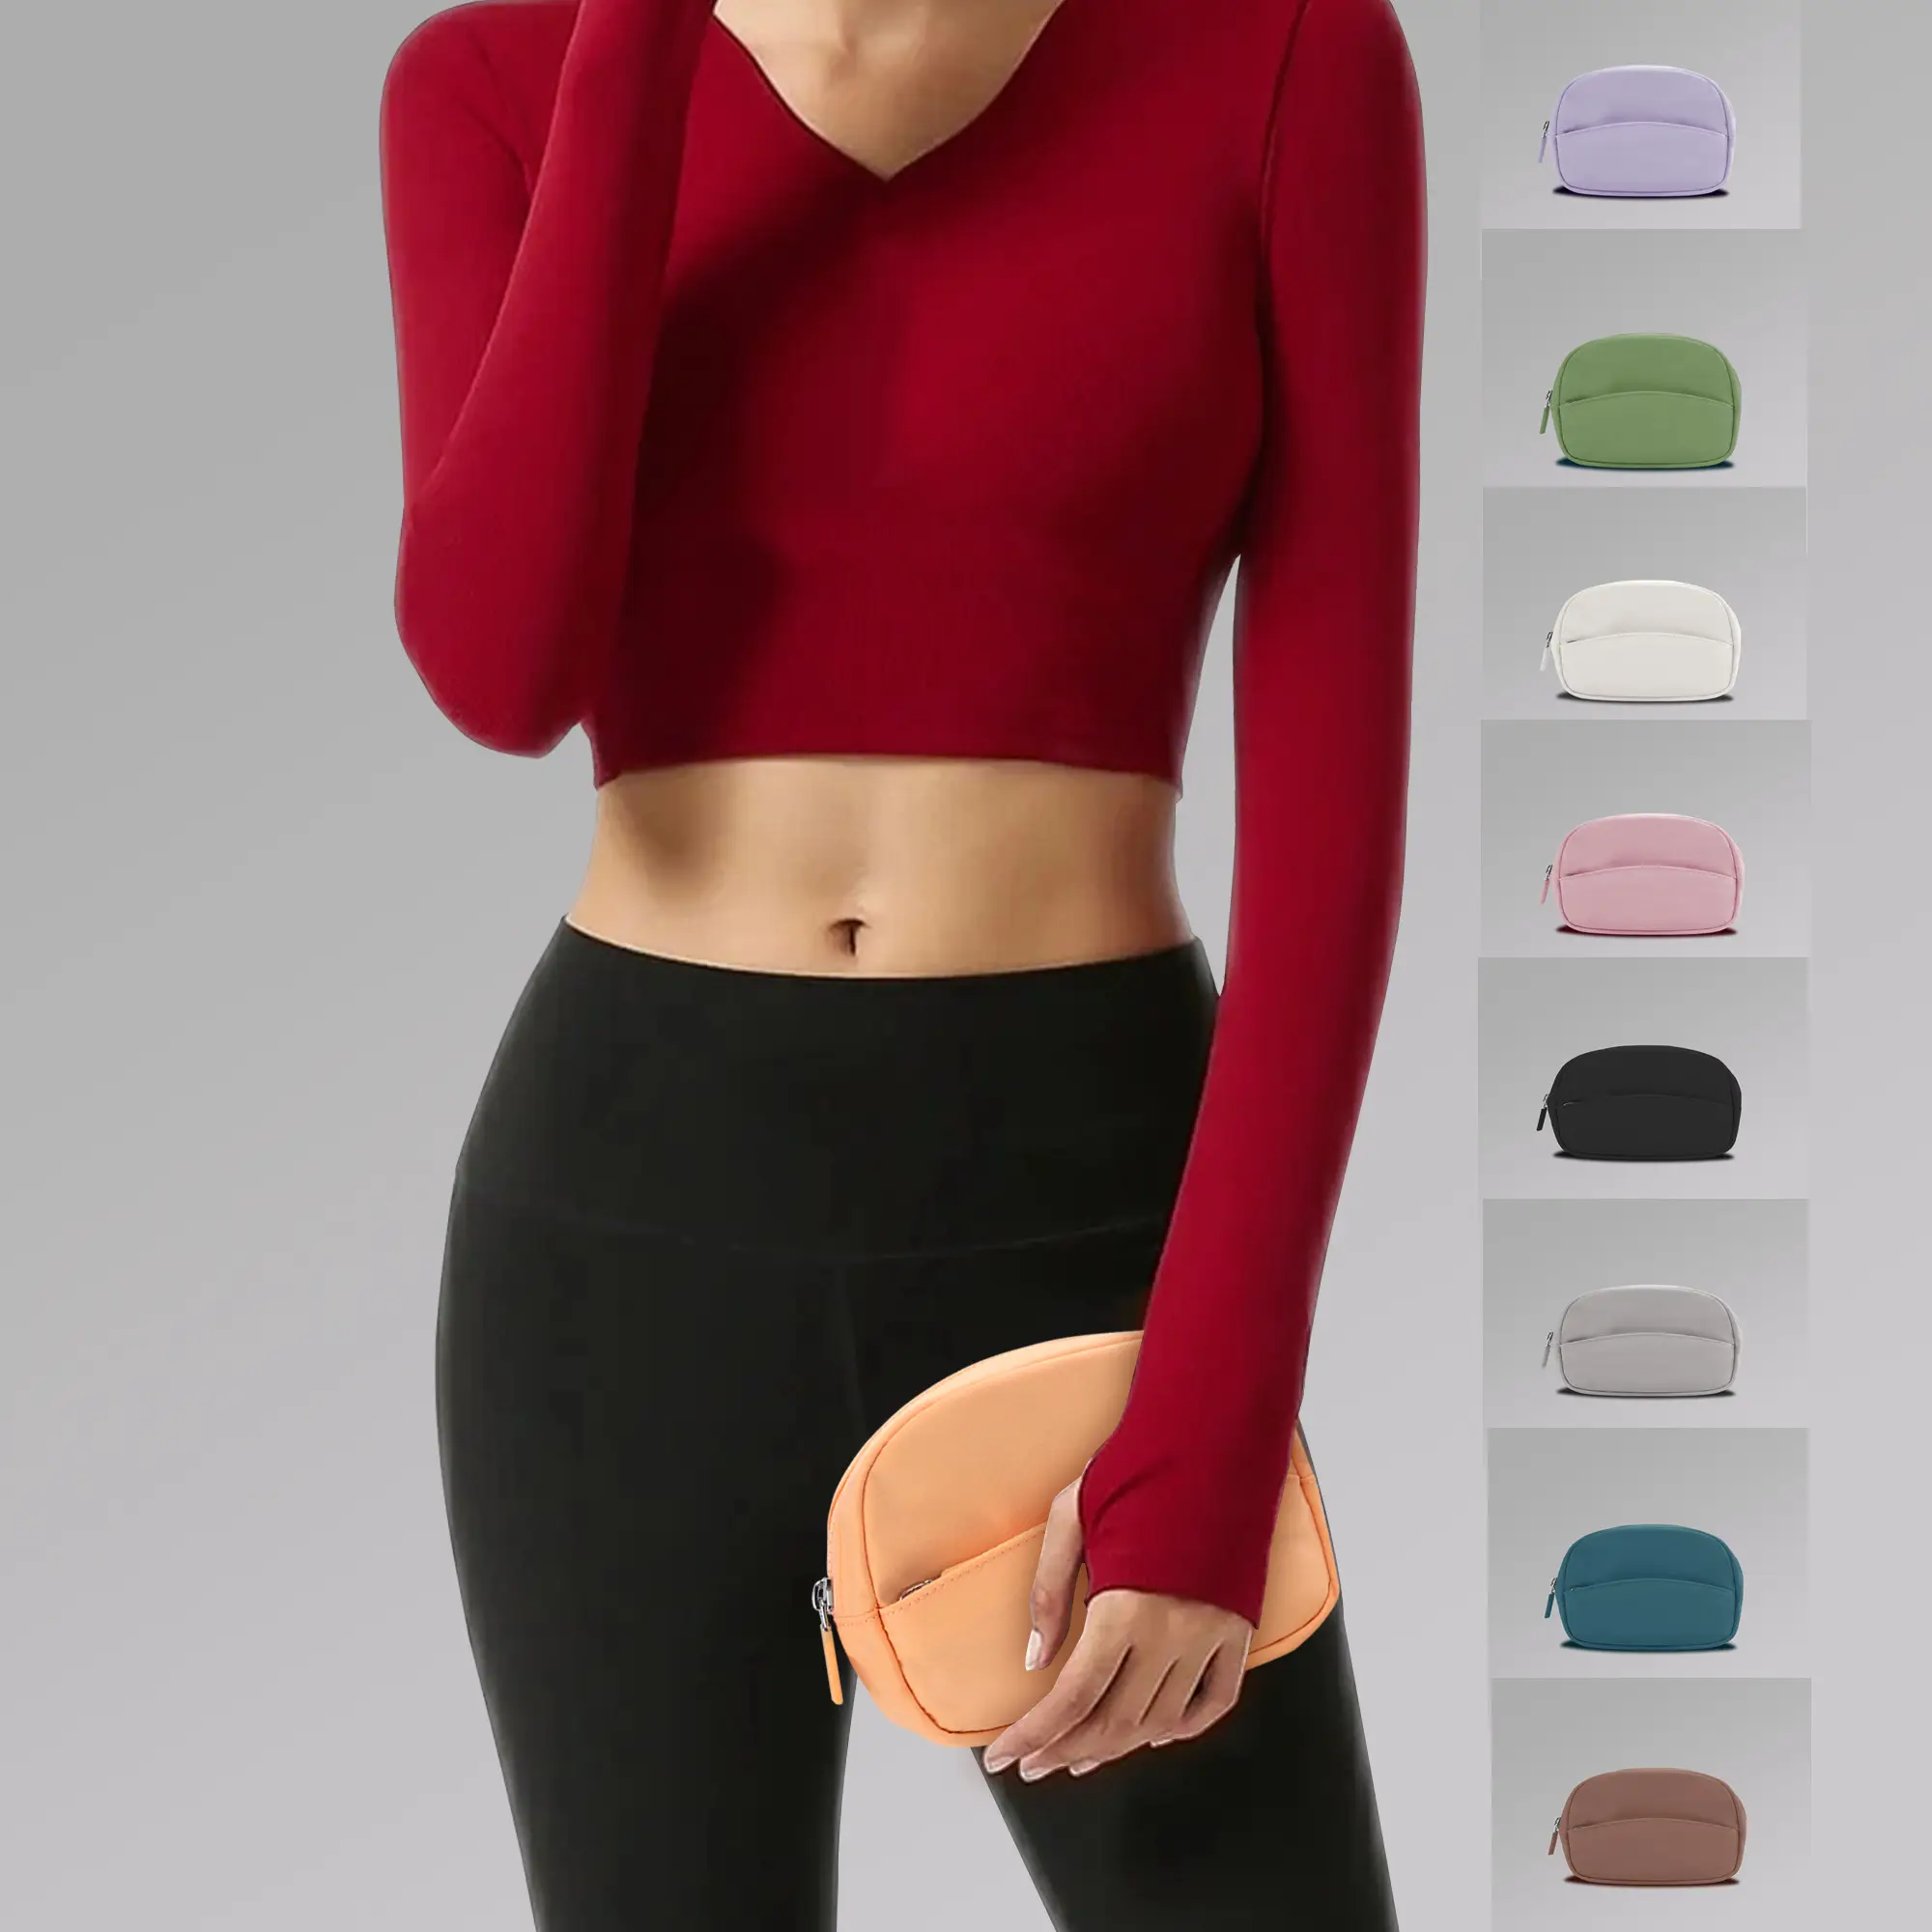 Novo design personalizado moda feminina yoga esporte mini estojo cosmético bolsa de embreagem carteira com zíper